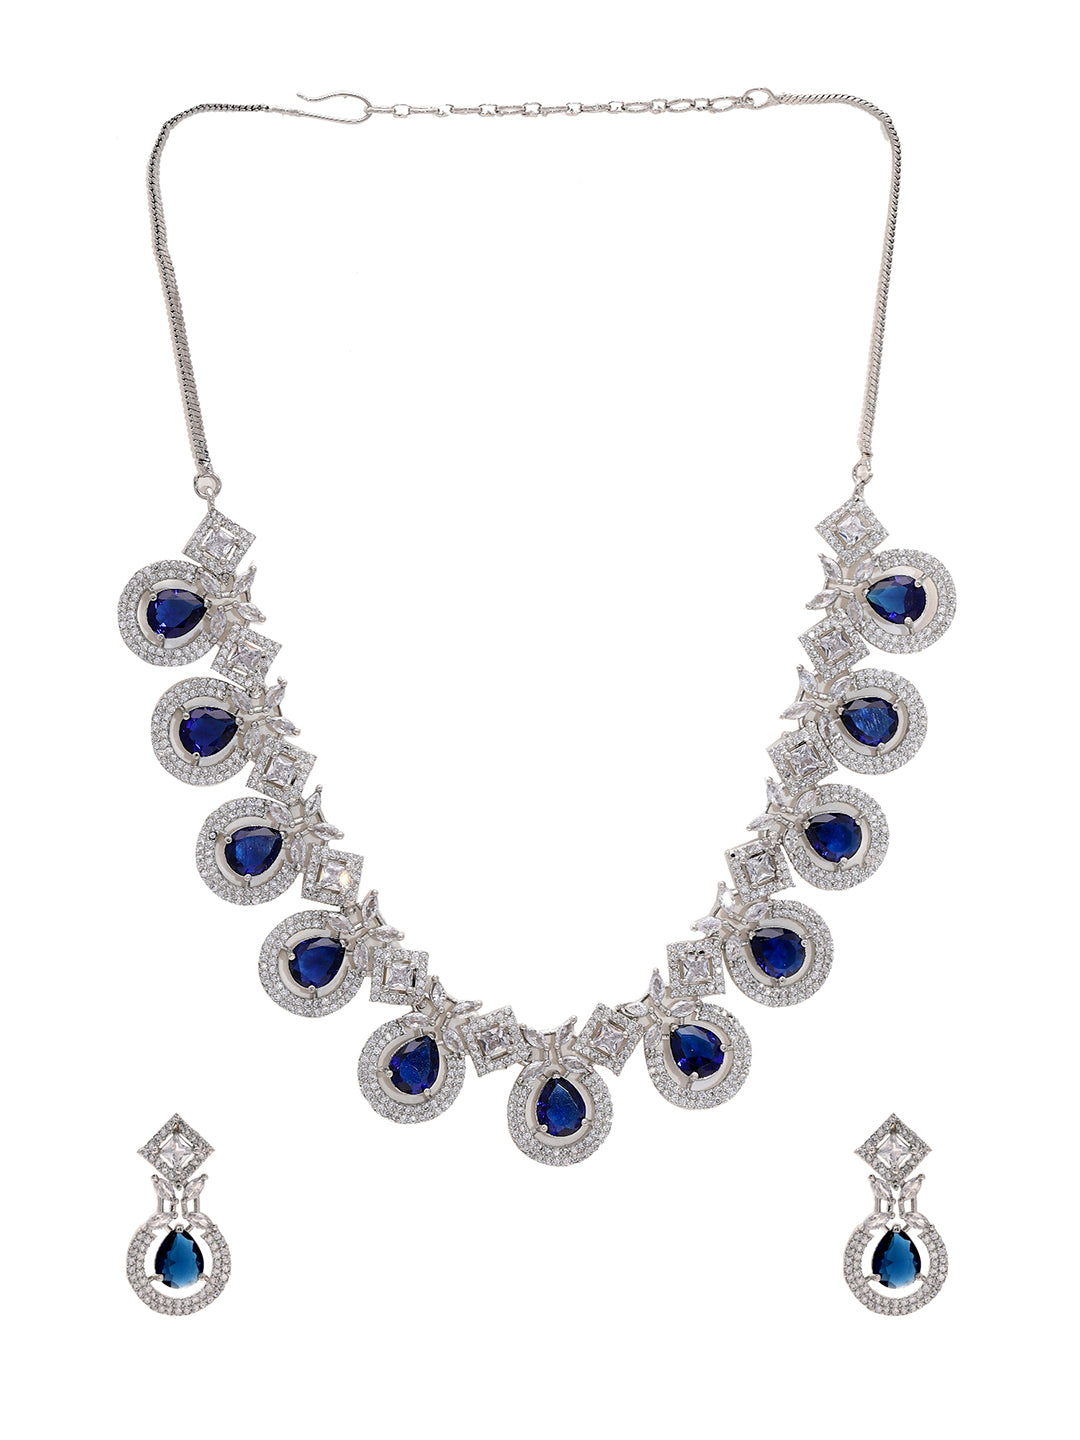 Priyaasi Radiant American Diamond and Blue Stones Jewellery Set